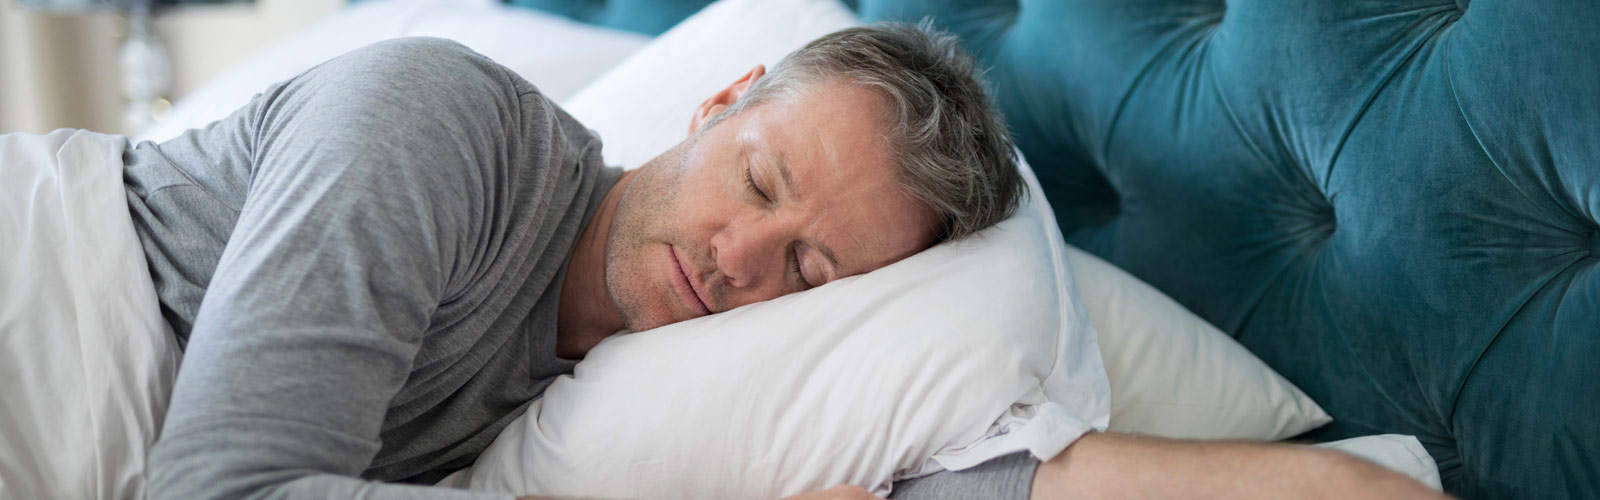 Es recomendable dormir después de hacer ejercicios? Conozca los